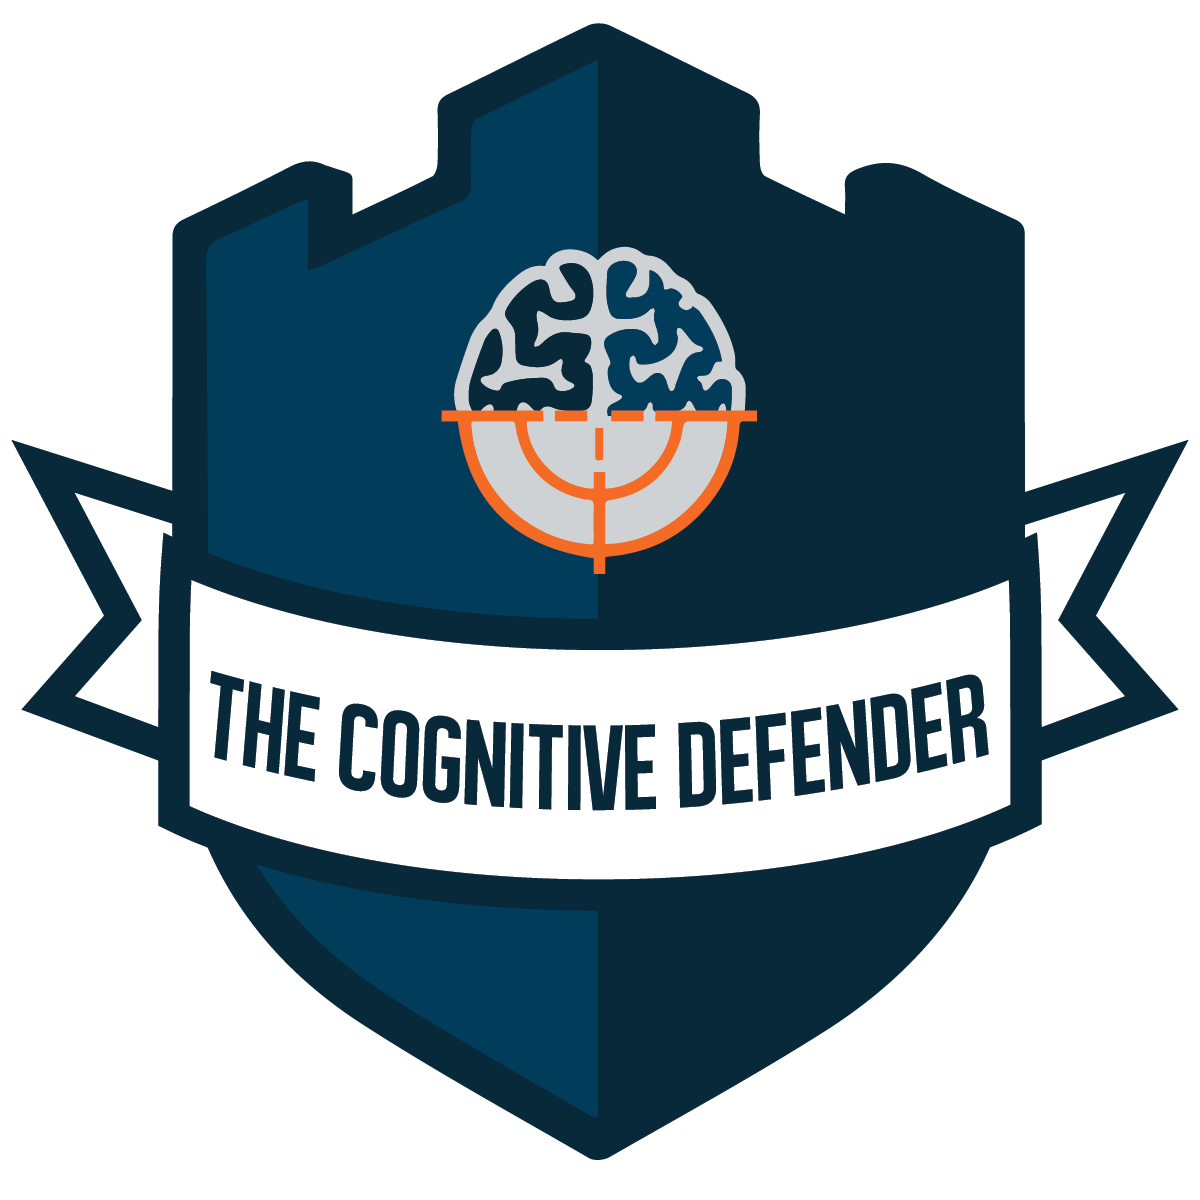 The Cognitive Defender